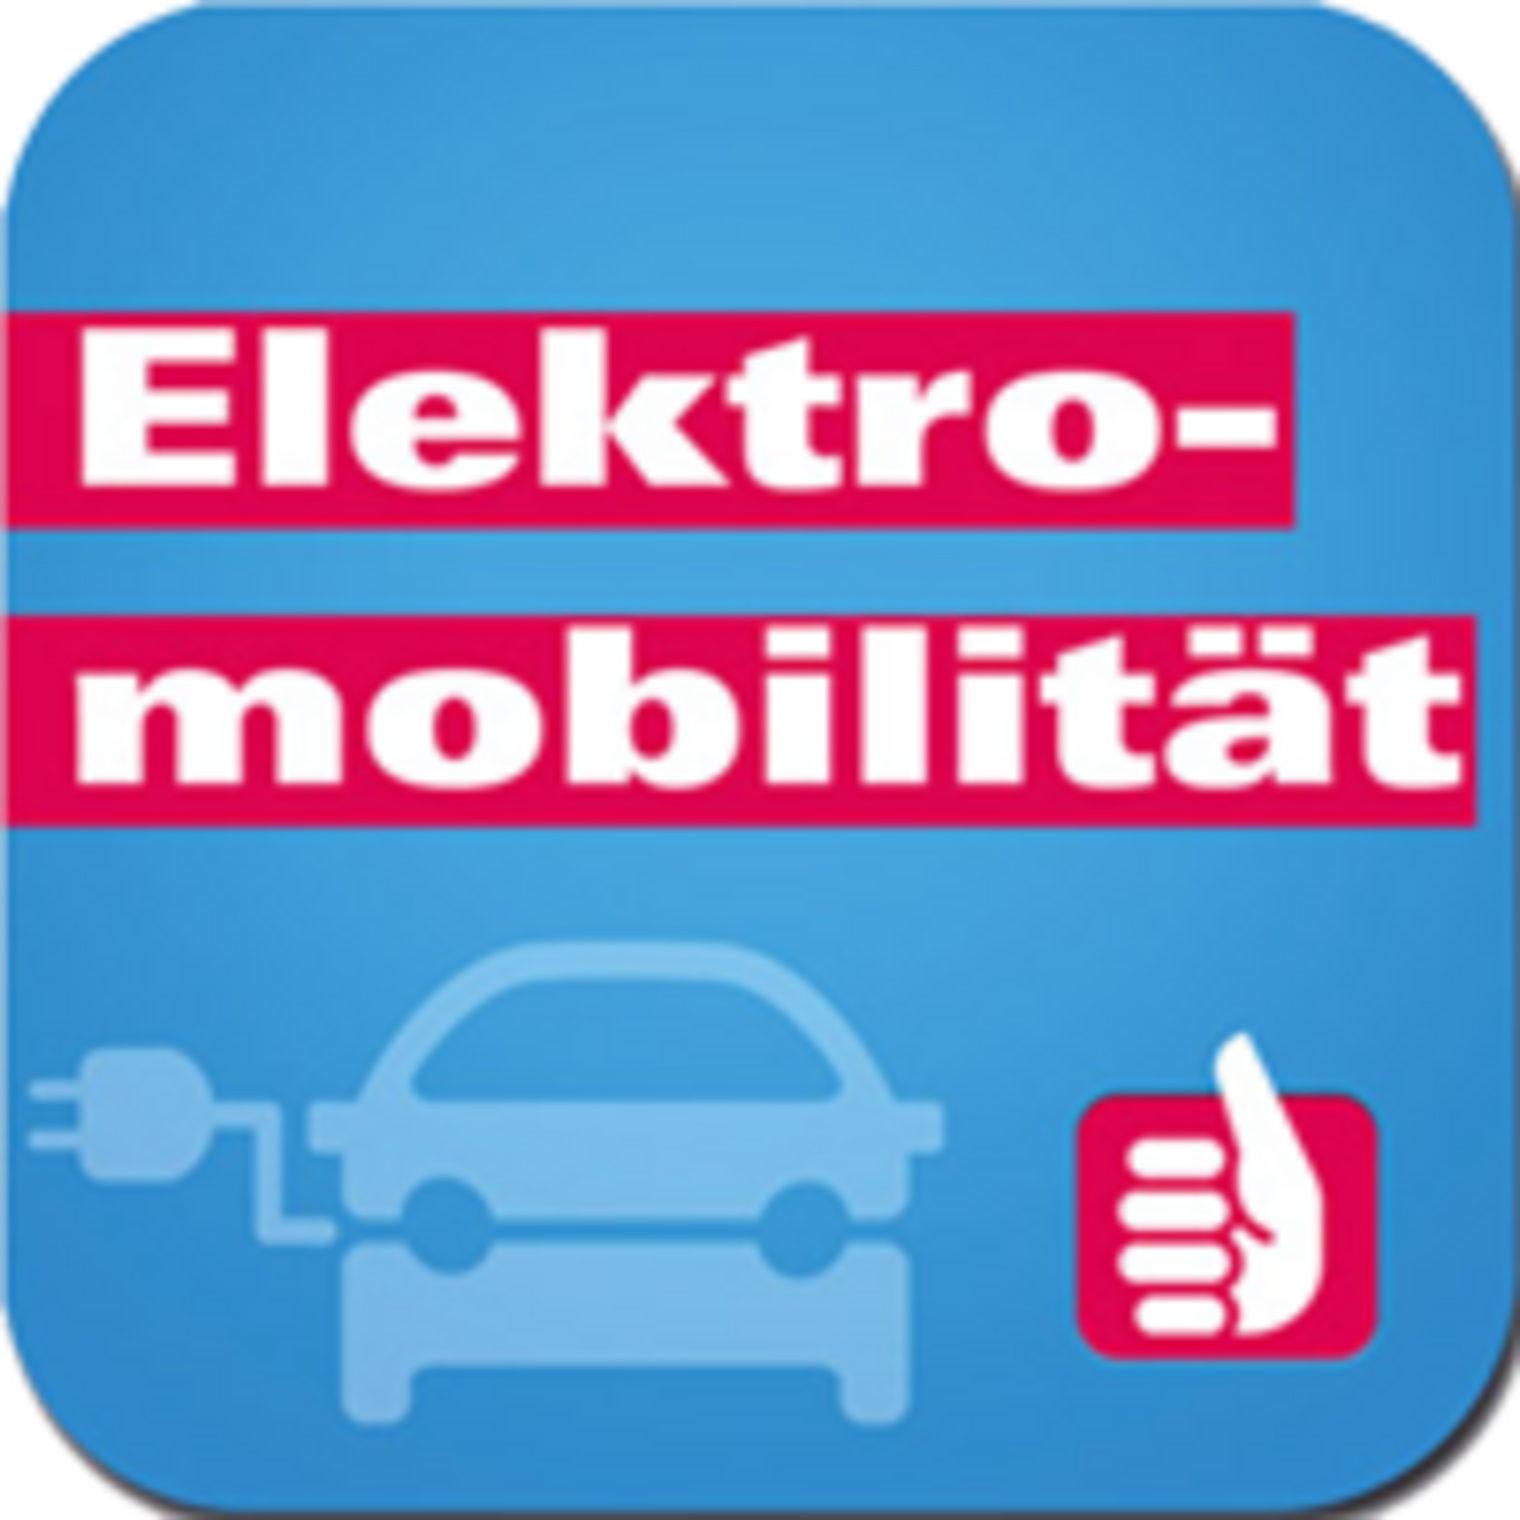 Elektromobilität (Icon)